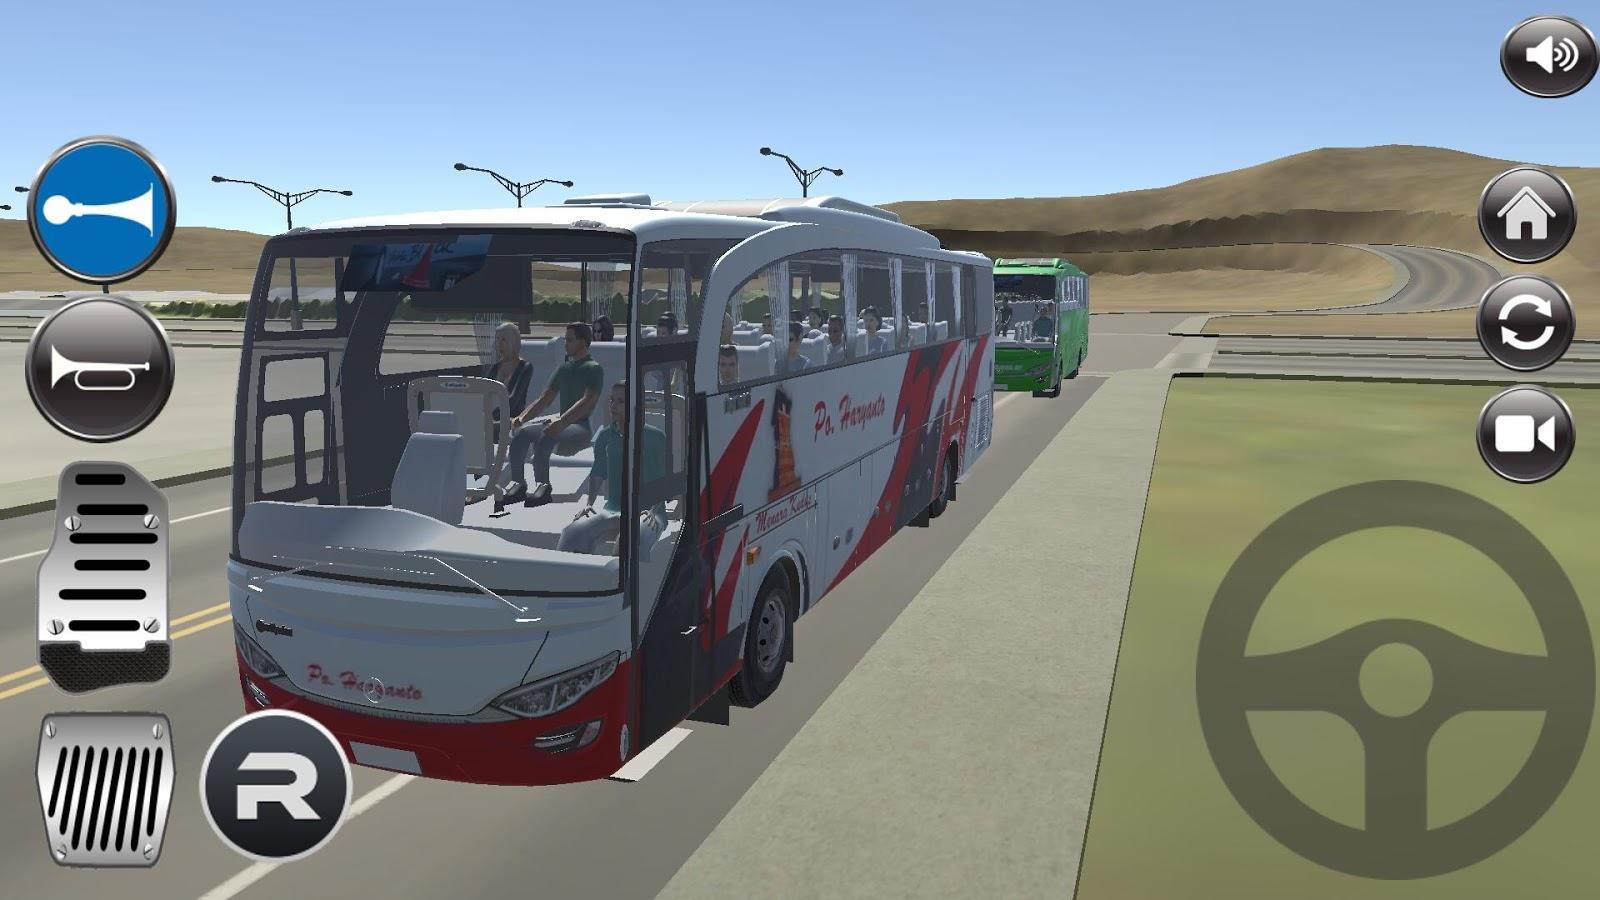  Download  Game  Bus  Simulator  Indonesia  3d For Pc  Terbaru 